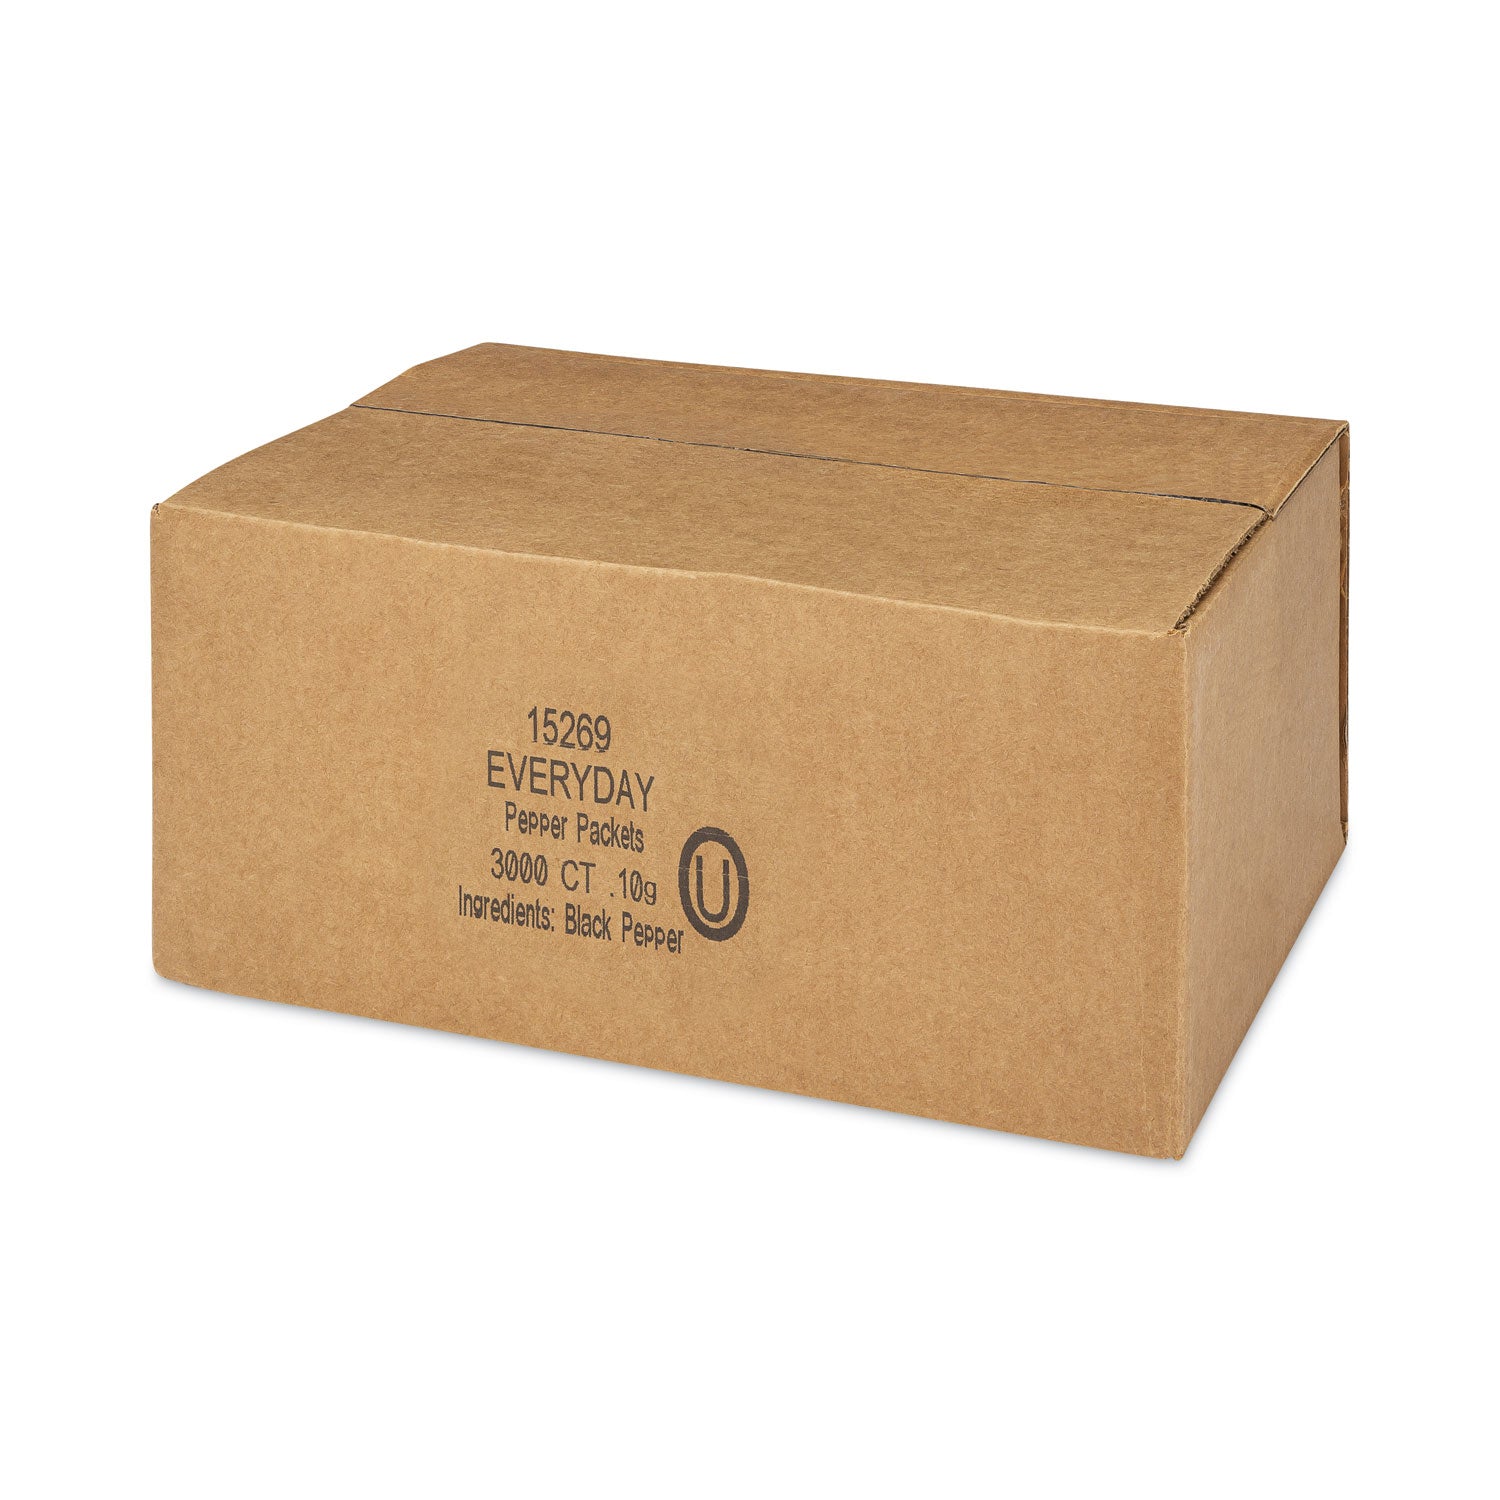 pepper-packets-01-g-packet-3000-carton_ofx15269 - 2